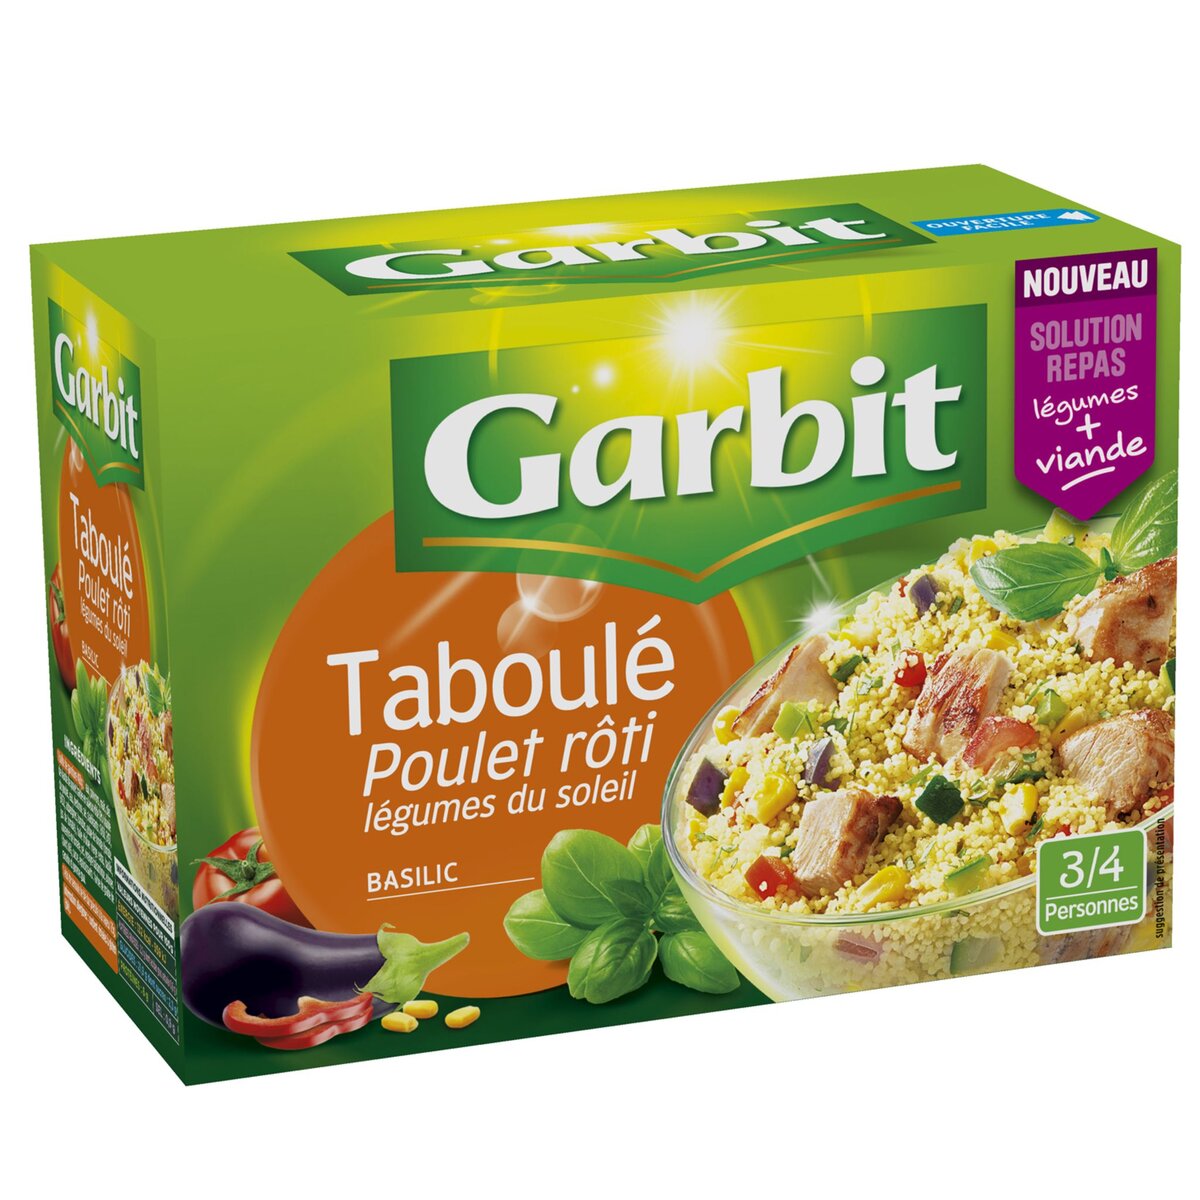 GARBIT Taboulé poulet rôti légumes du soleil et basilic 3-4 personnes 525g